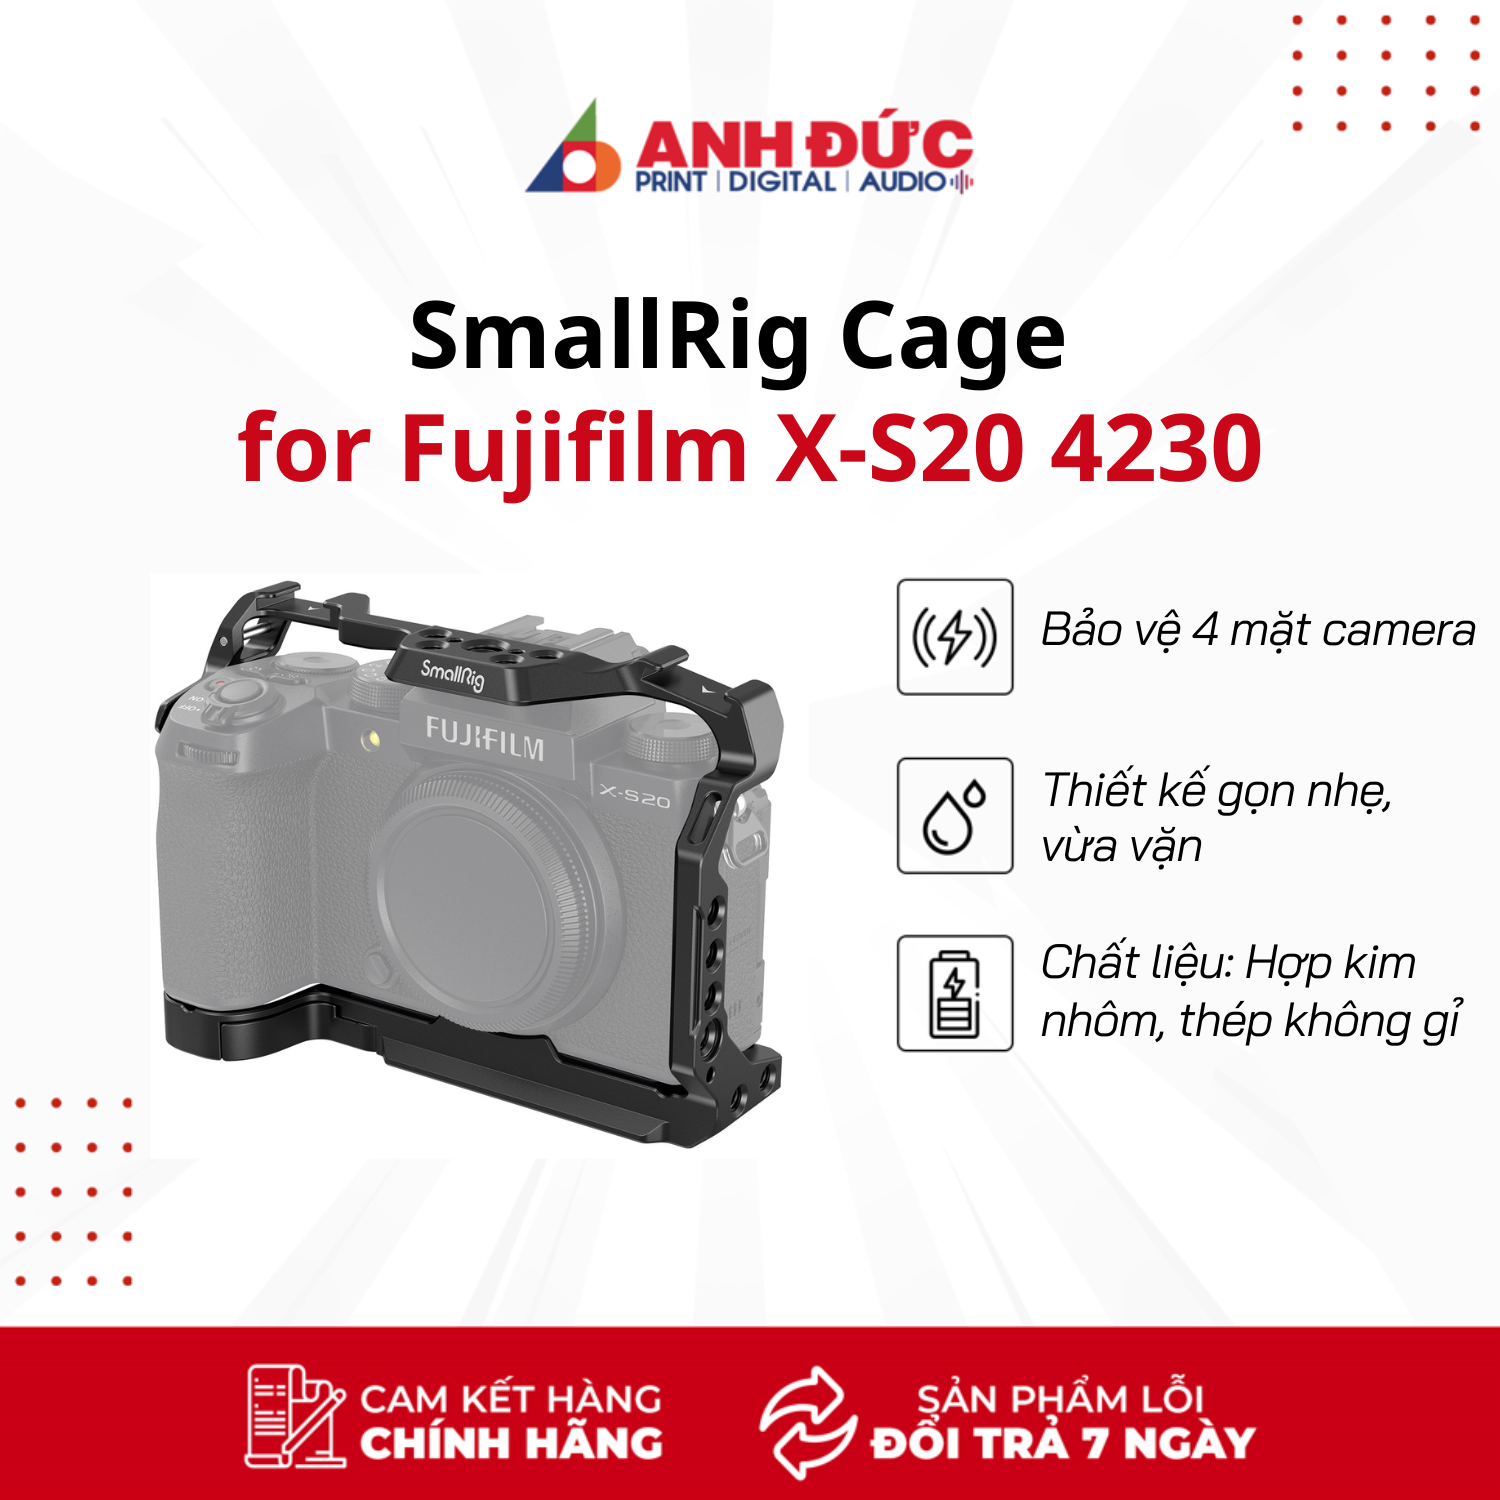 Khung máy ảnh SmallRig Cage for Fujifilm X-S20 4230 - Hàng nhập khẩu